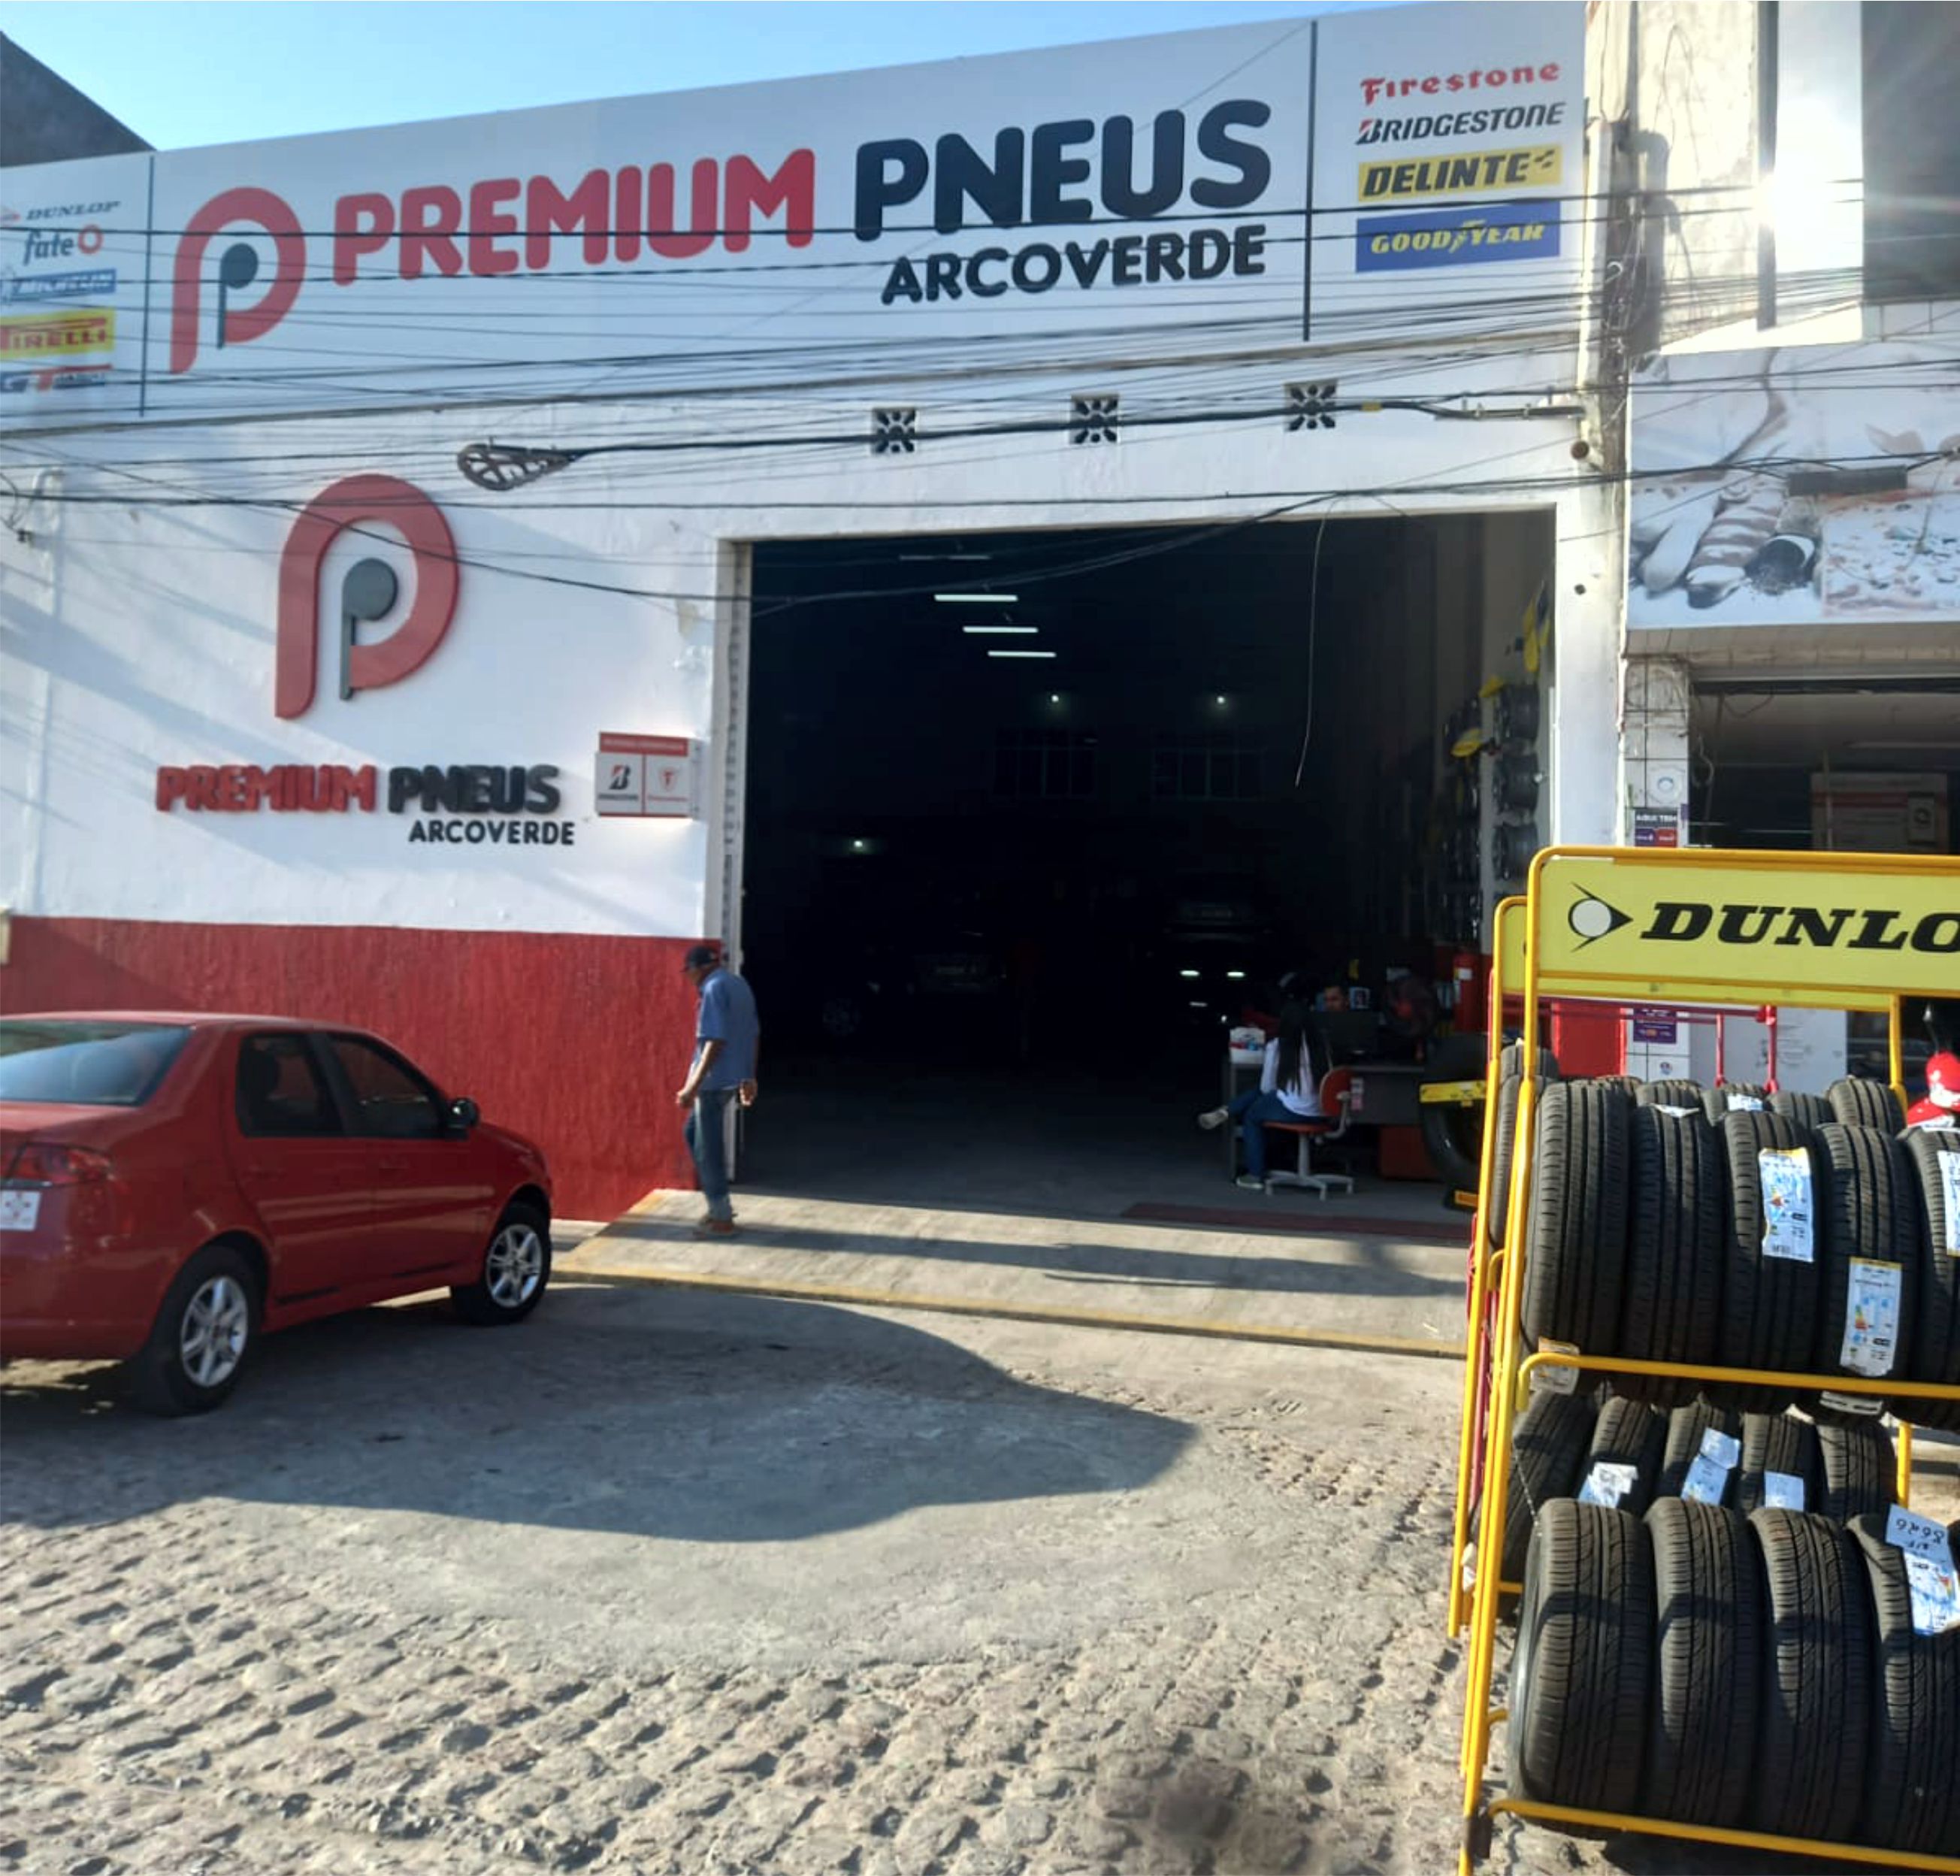 Premium Pneus Arcoverde